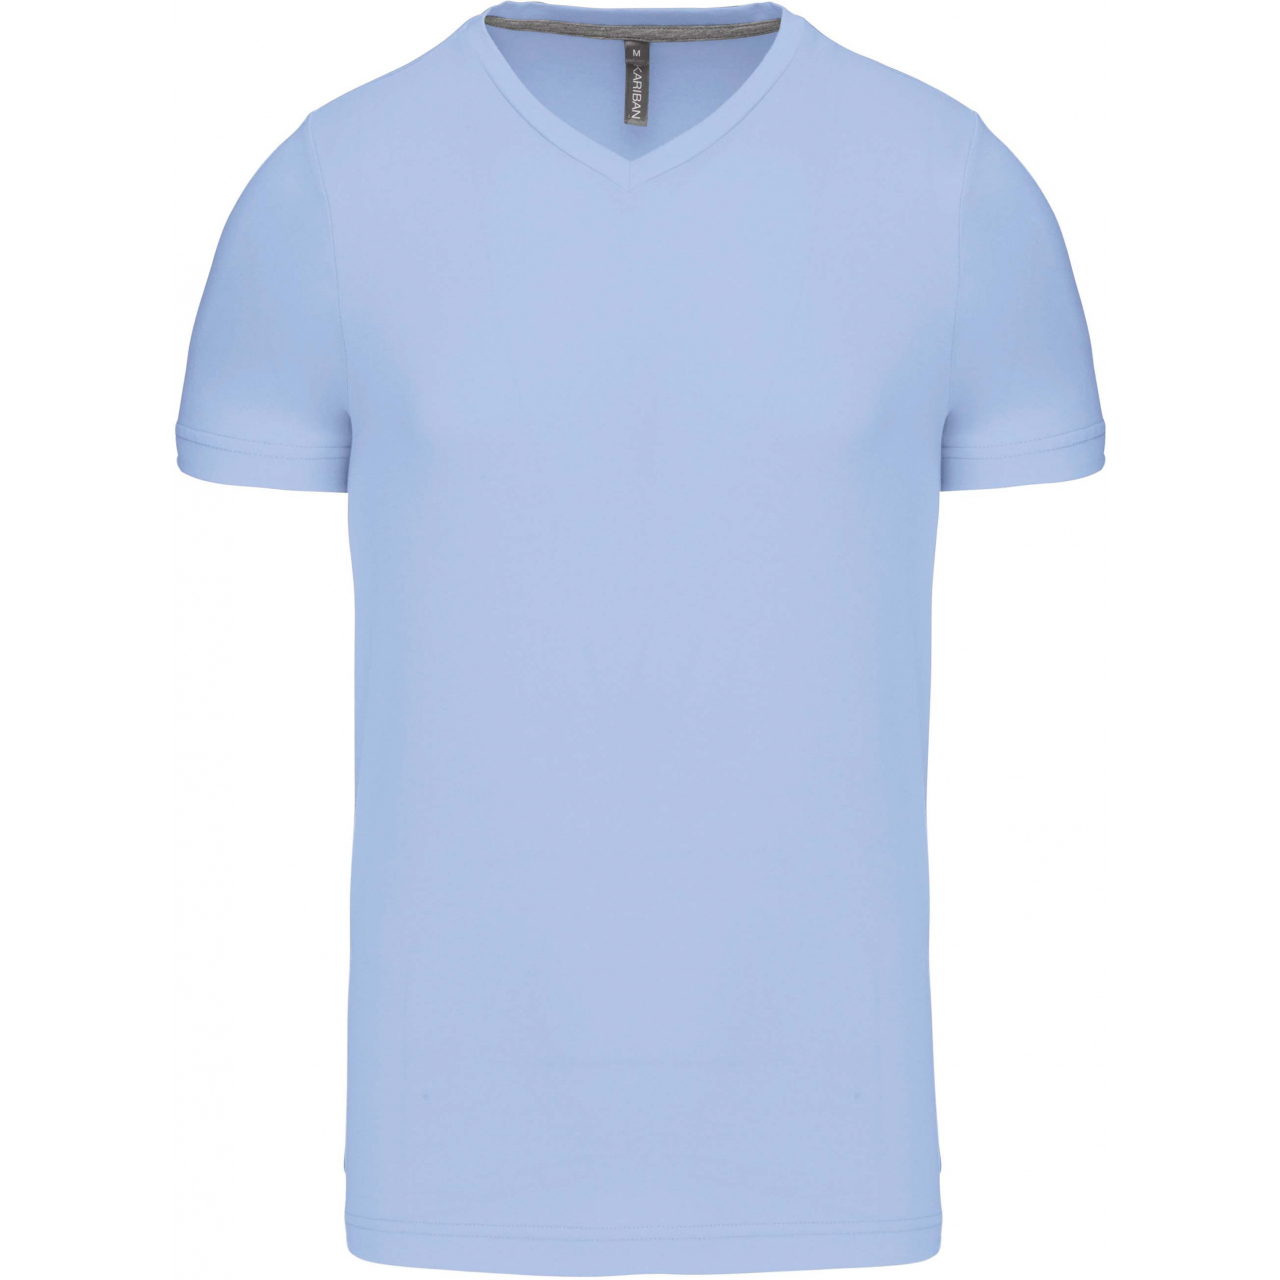 Pánské tričko Kariban krátký rukáv V-neck - světle modré, XL